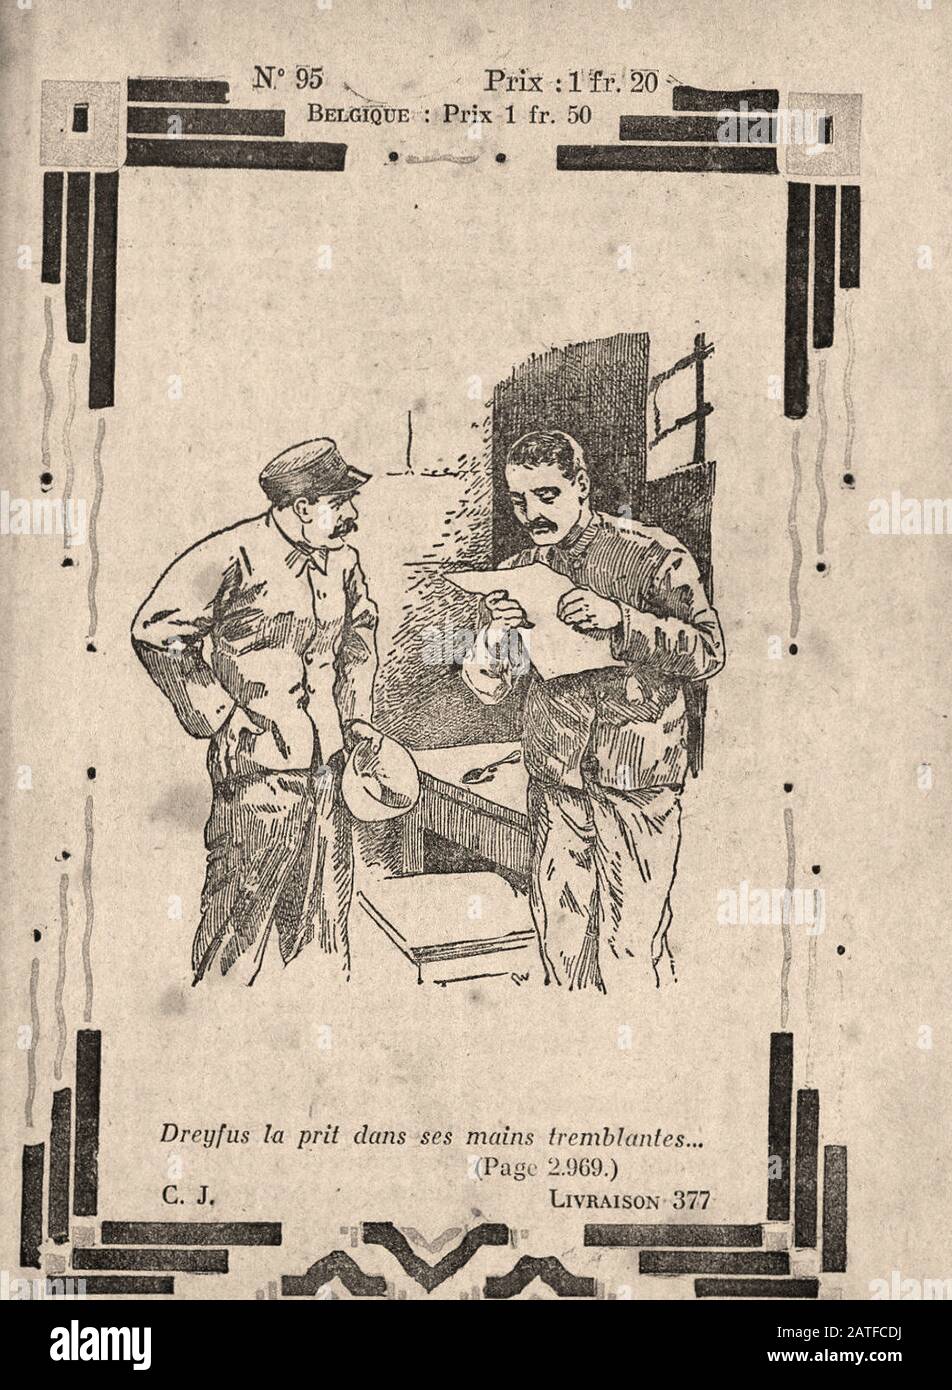 El caso Dreyfus 1894-1906 - Le Calvaire d'un inocente, no. 95 - Anónimo francés libro ilustrado Foto de stock